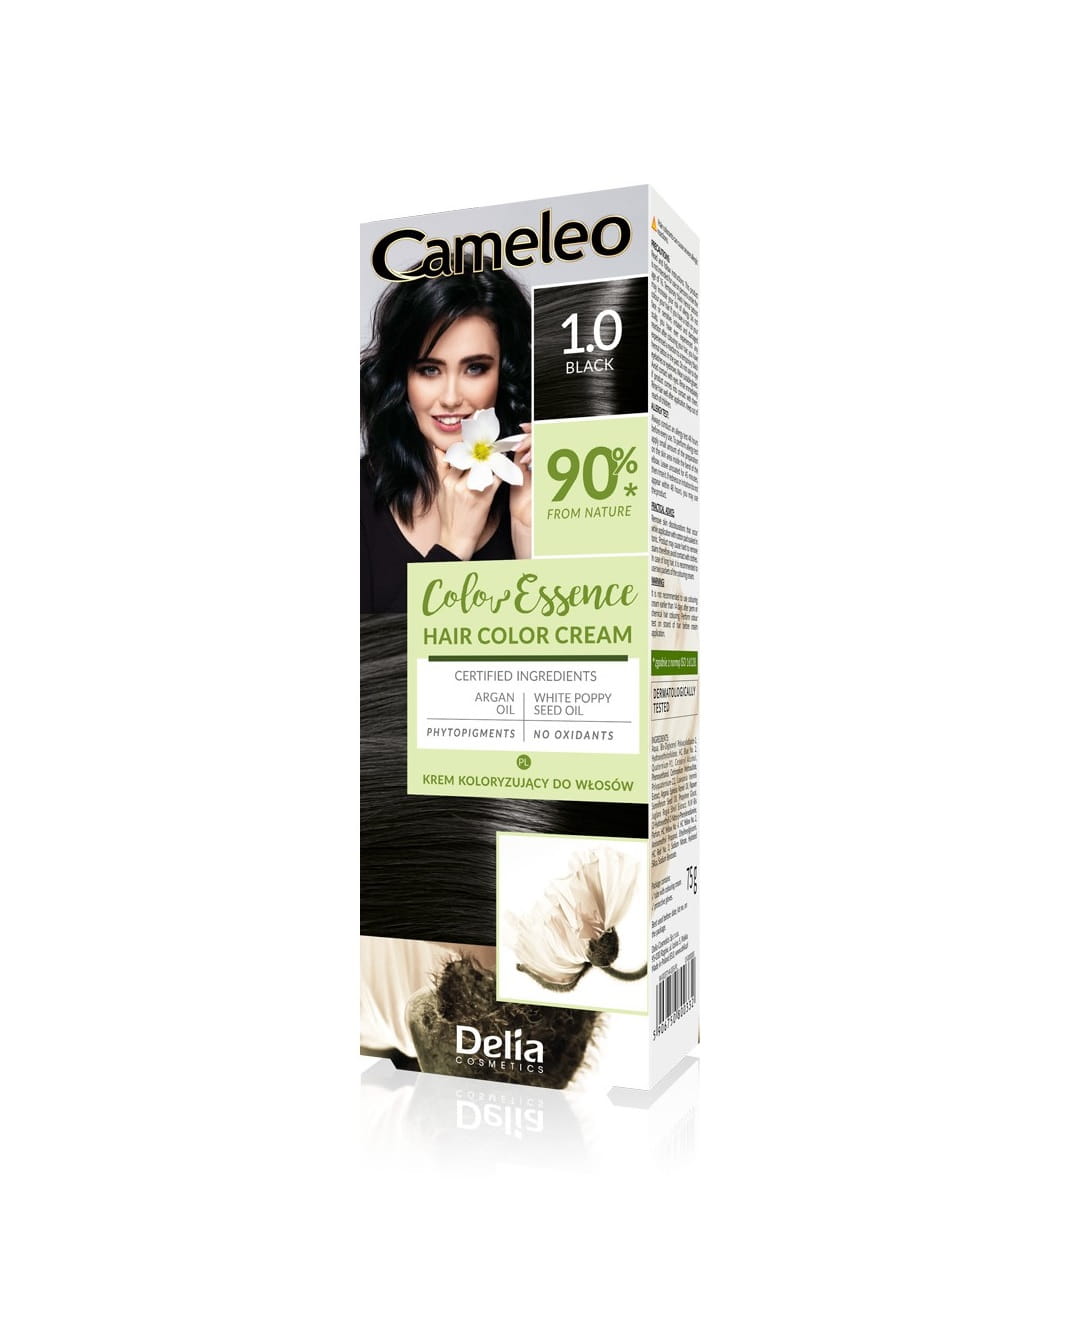 Delia Cameleo Krem koloryzujący do włosów 1.0 Black 75 g